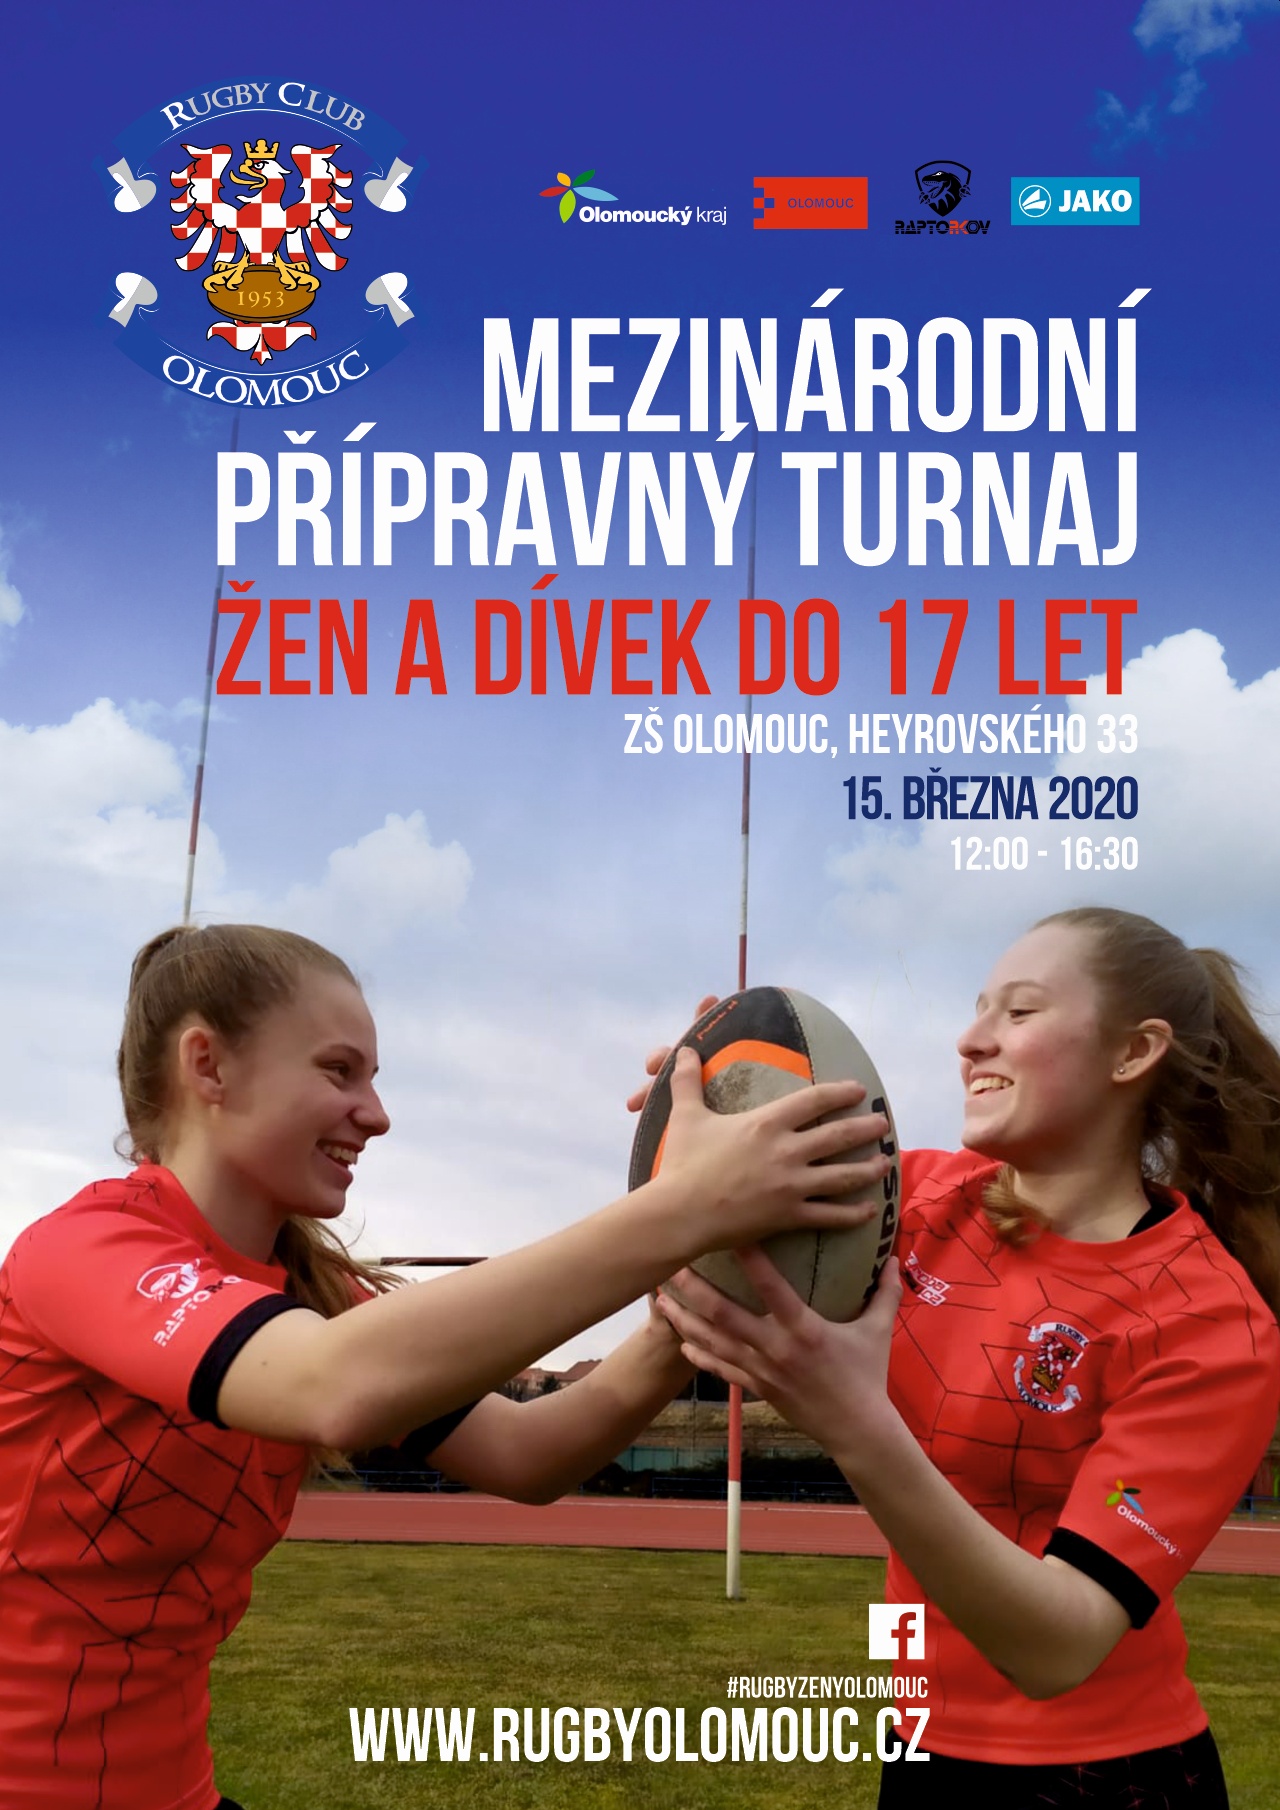 Mezinárodní přípravný turnaj rugby Žen a Dívek do 17 let.